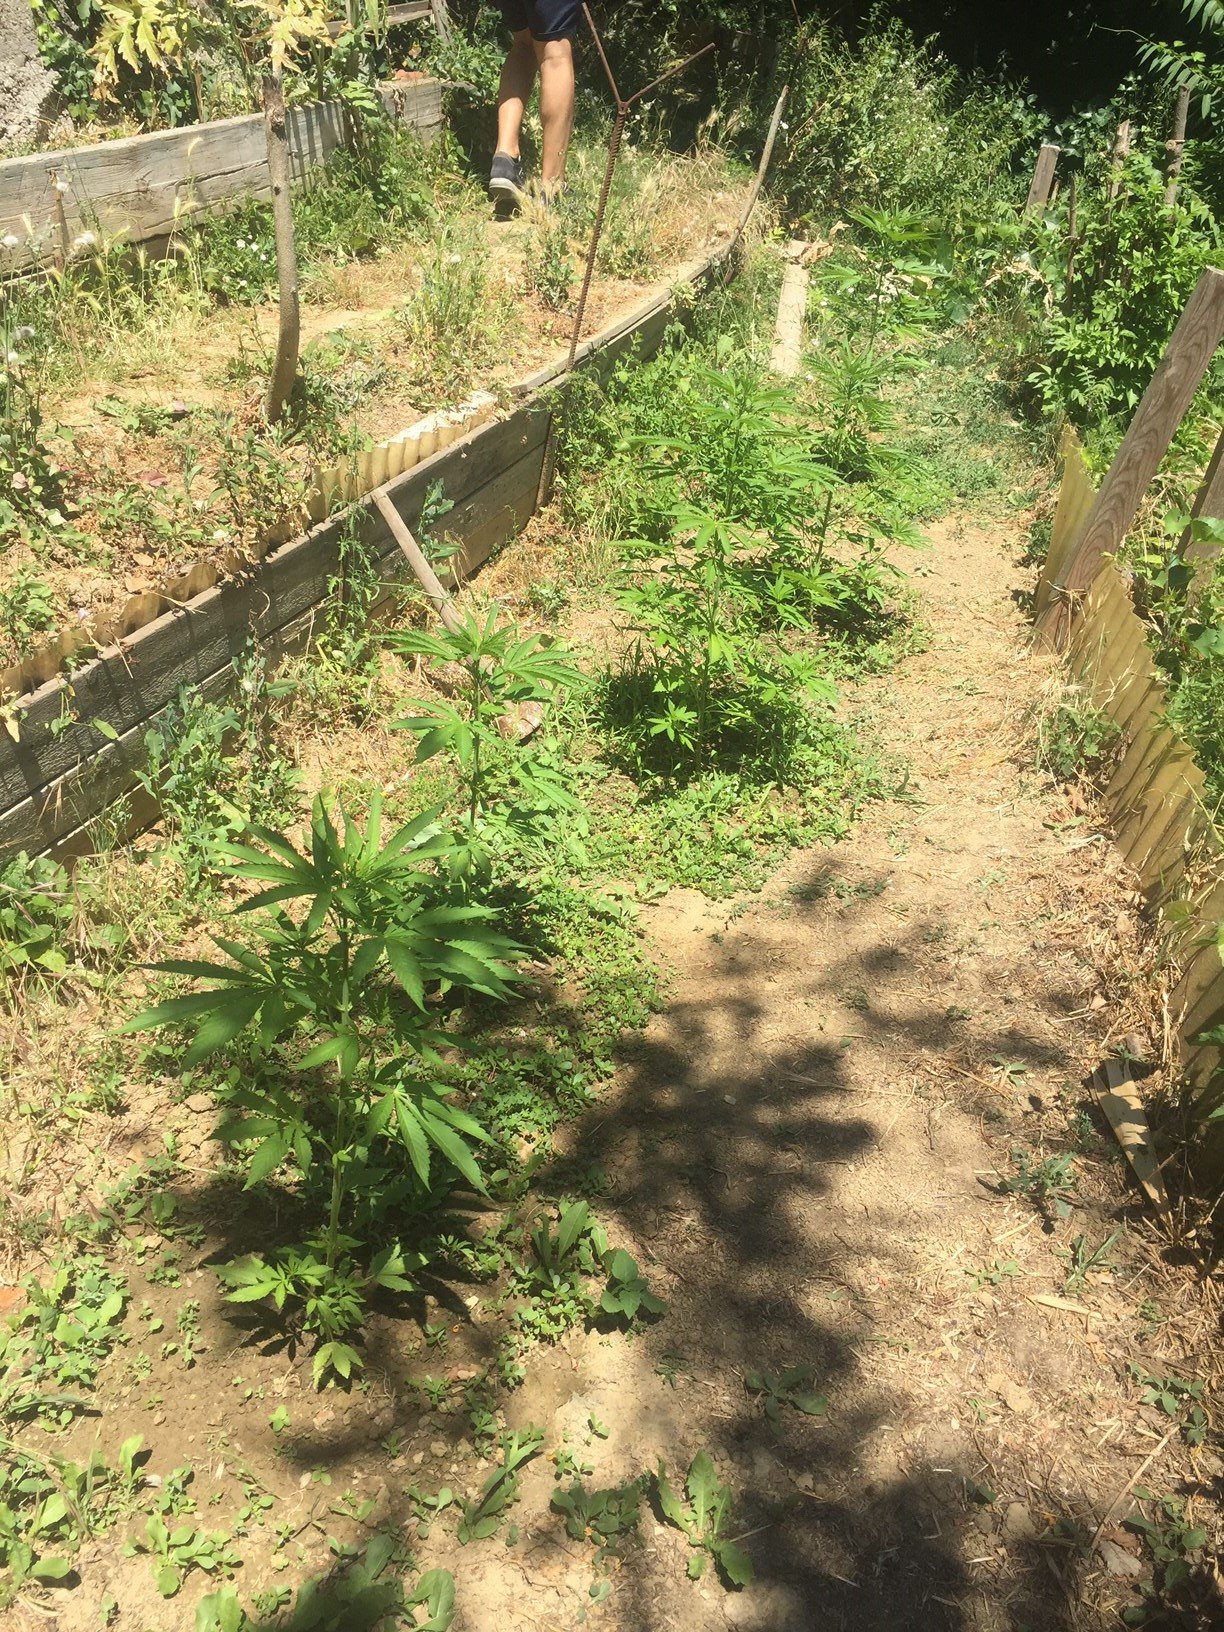 In giardino nove piante di marijuana alte mezzo metro: denunciato